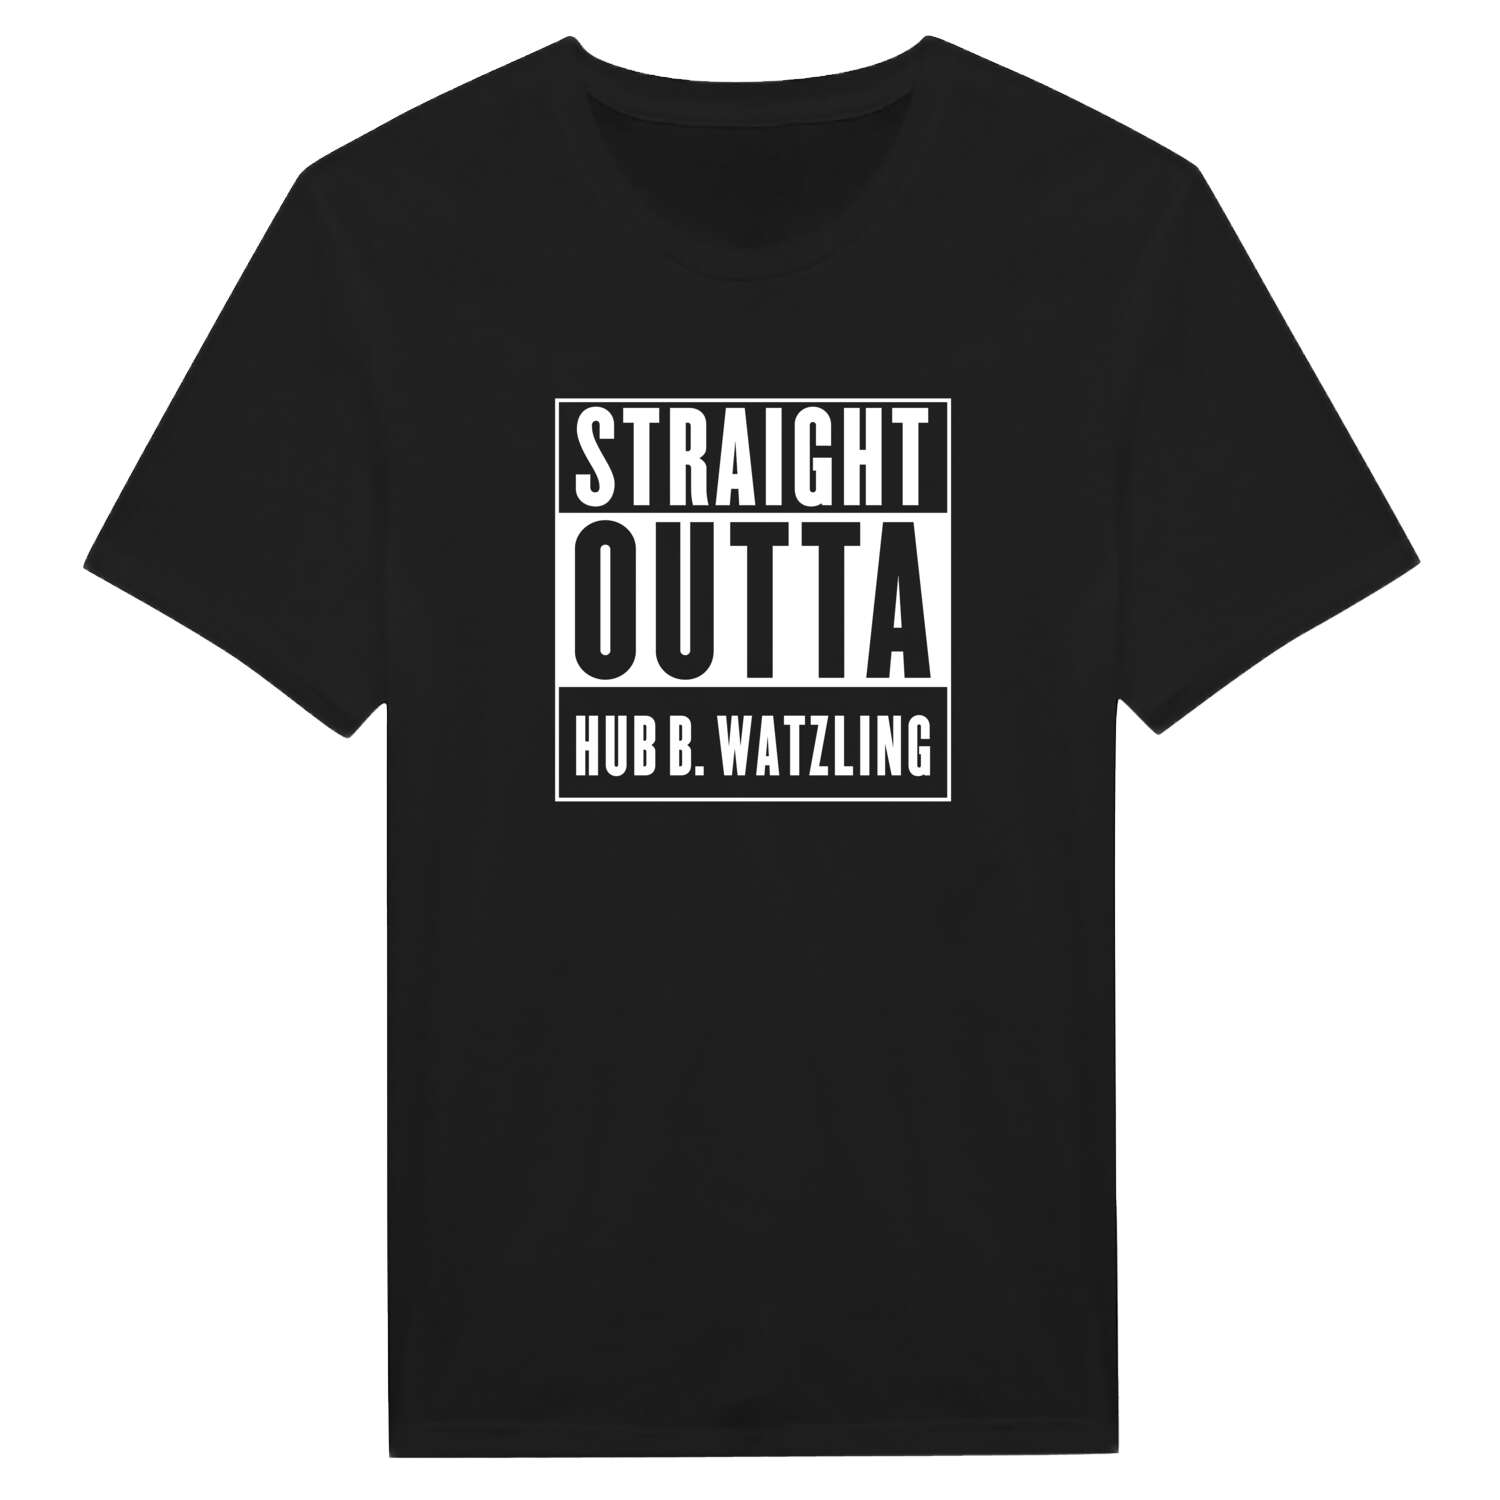 Hub b. Watzling T-Shirt »Straight Outta«